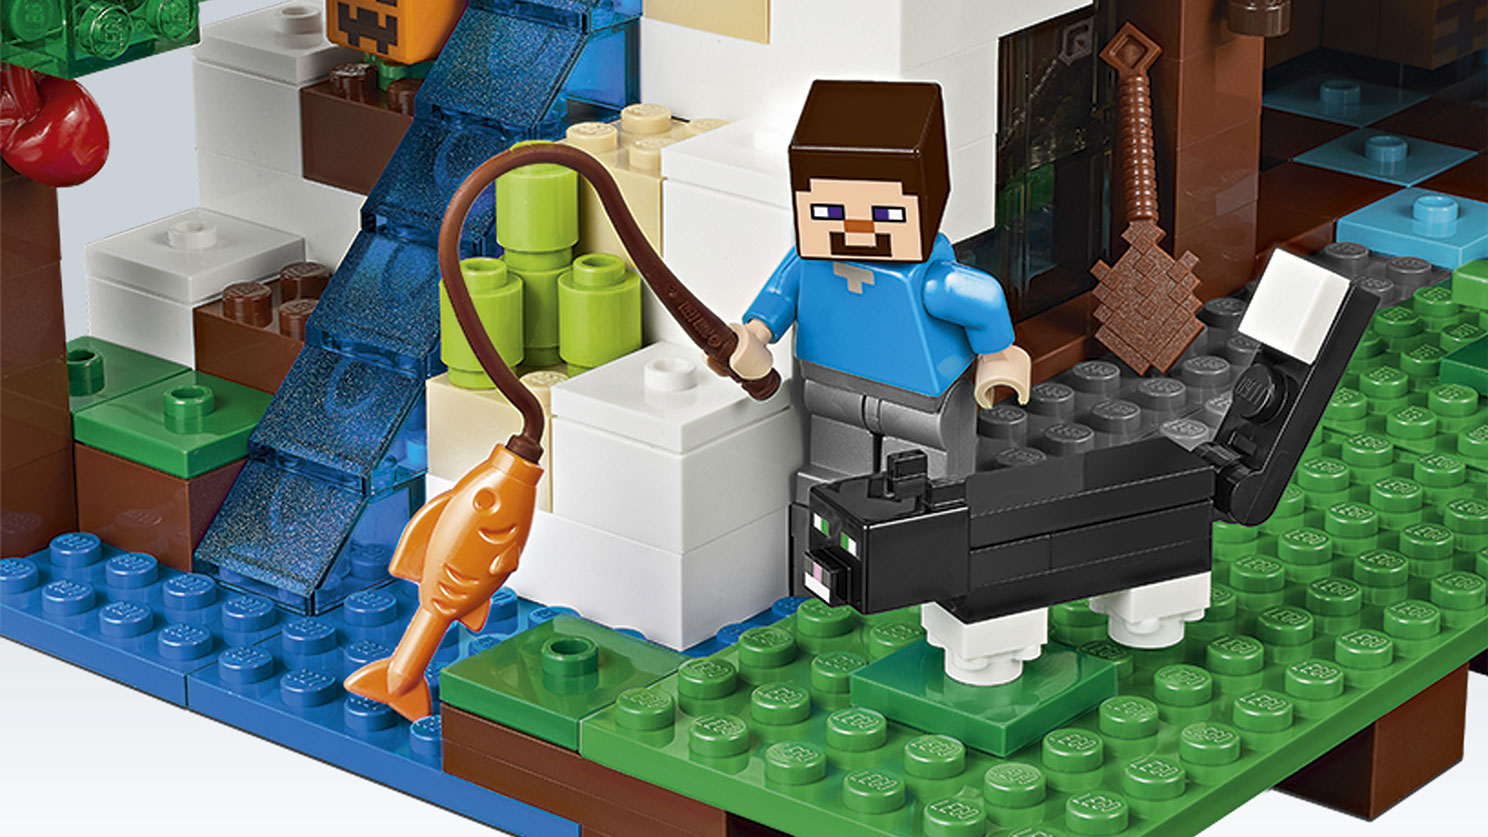 滝のふもと 21134 - レゴ®マインクラフト セット - LEGO.comキッズ